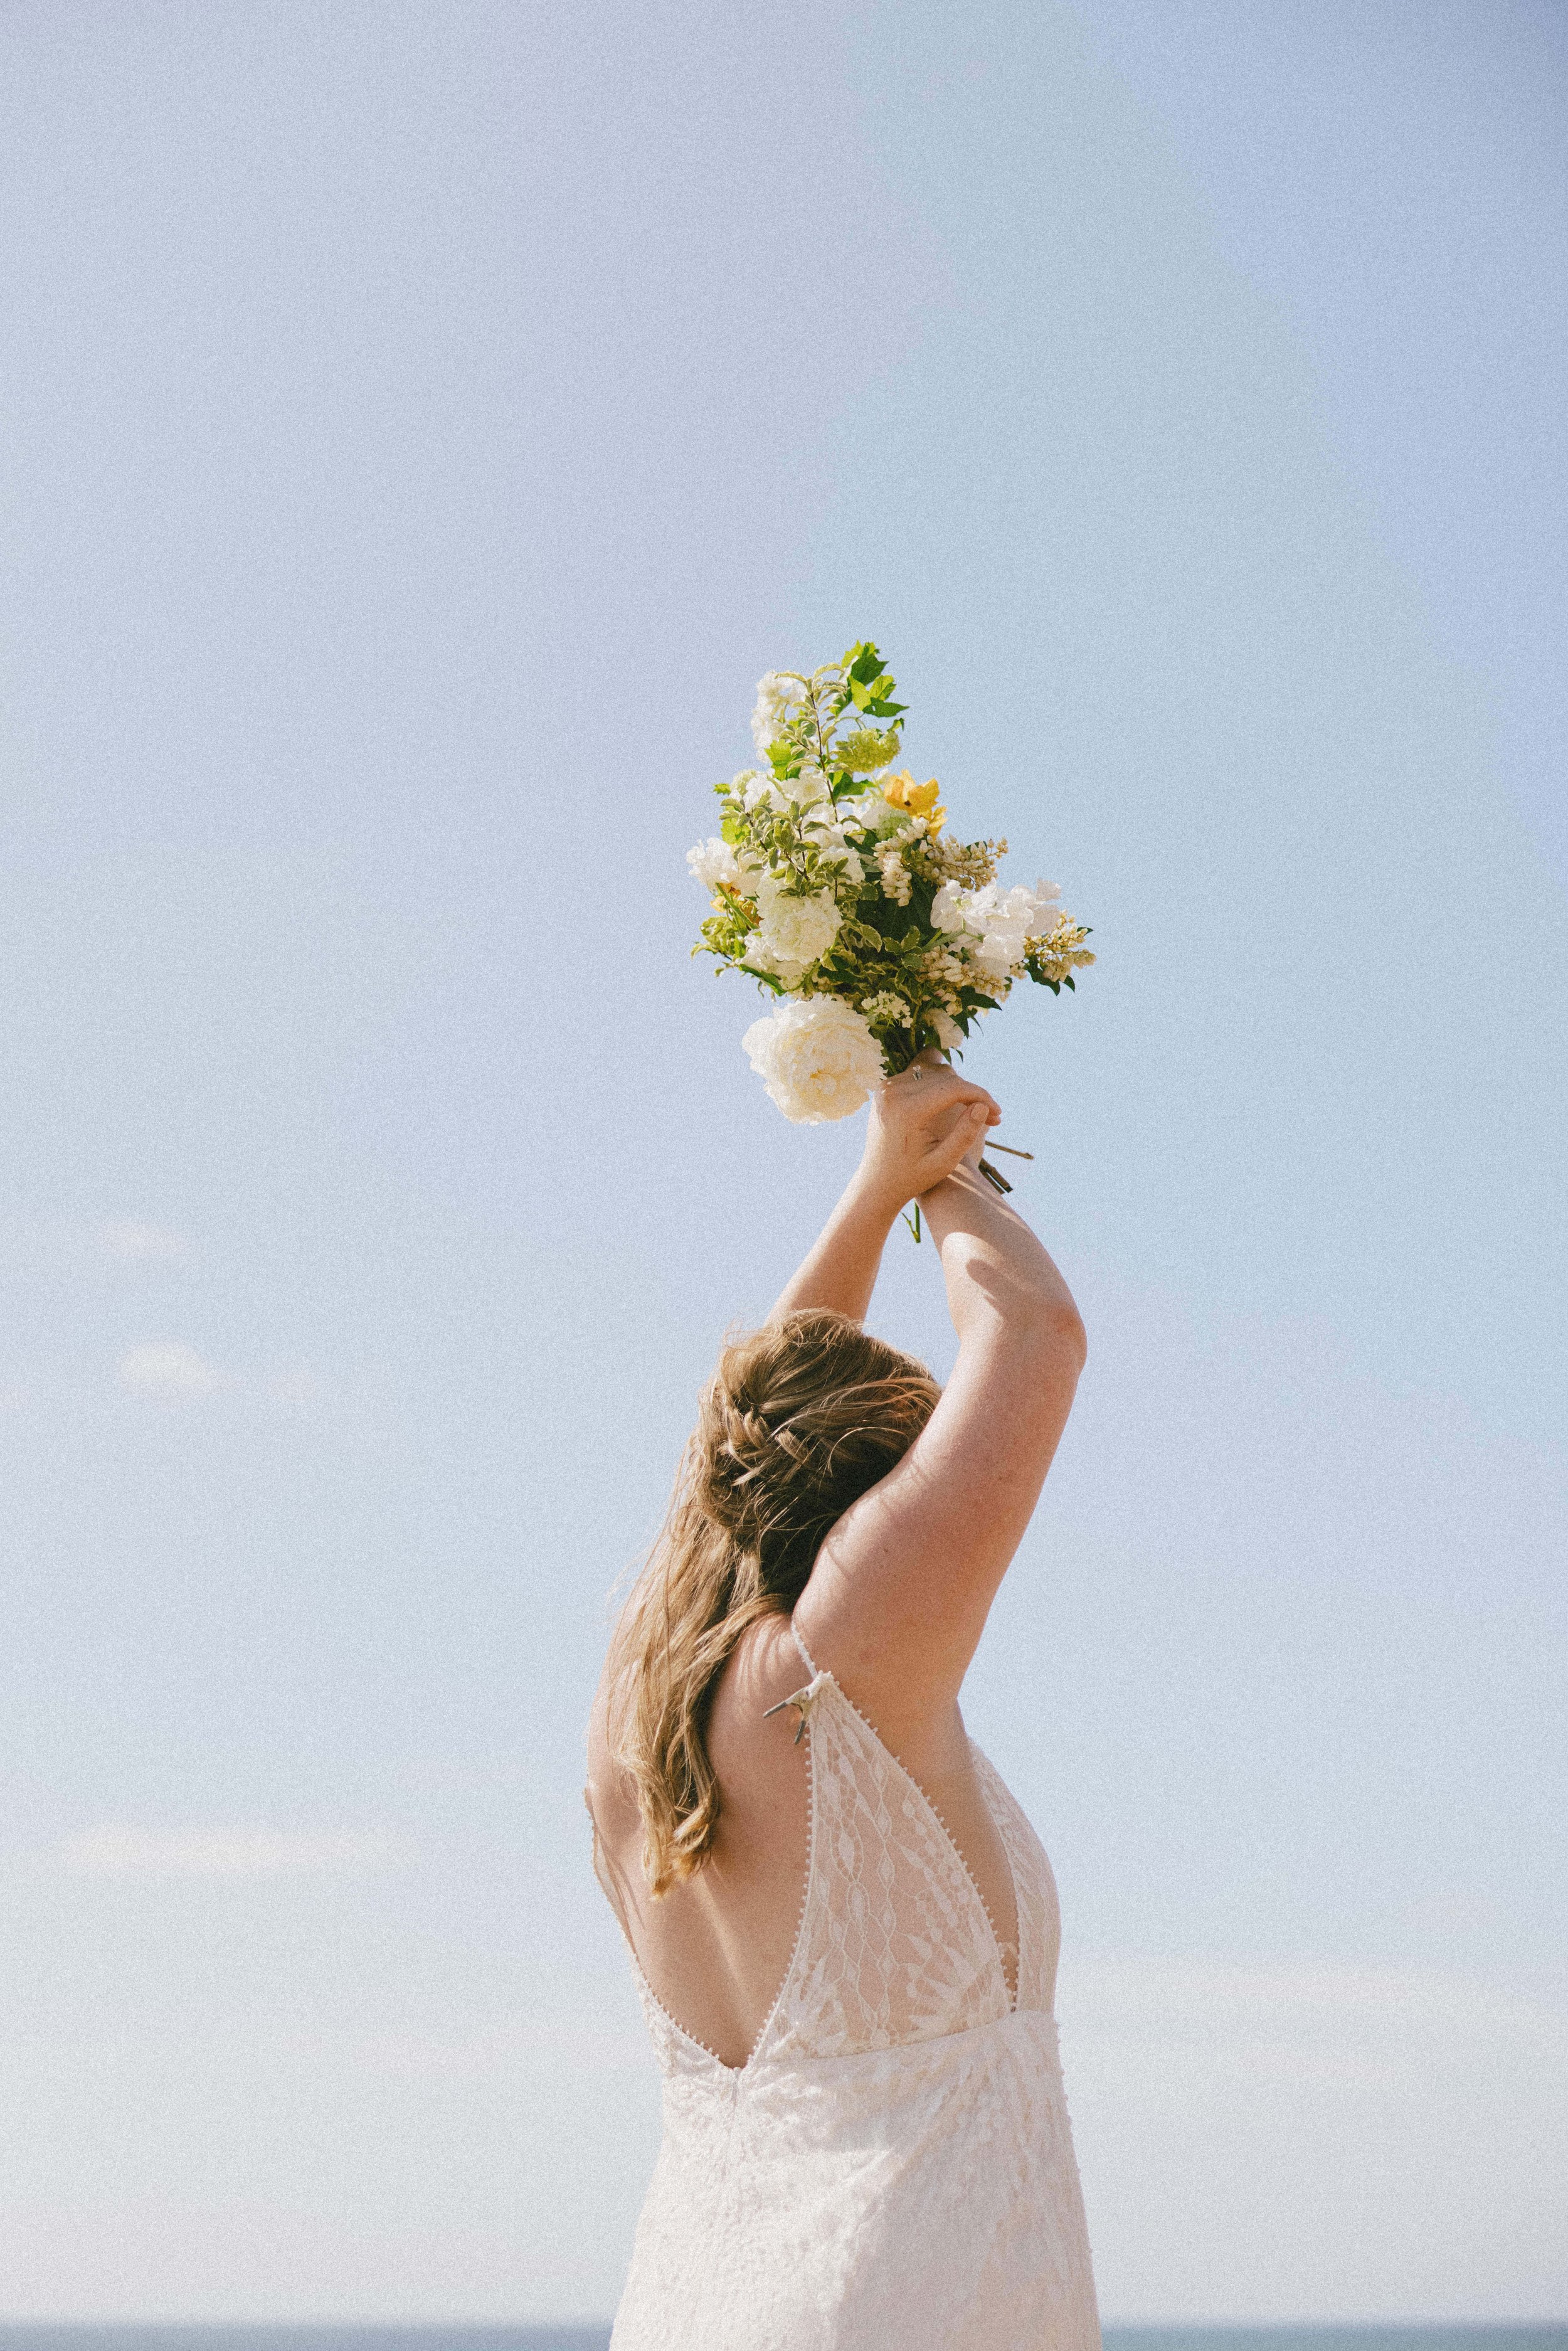 a coastal beach bridal portrait with a rish wedding dress and greenery bouquet